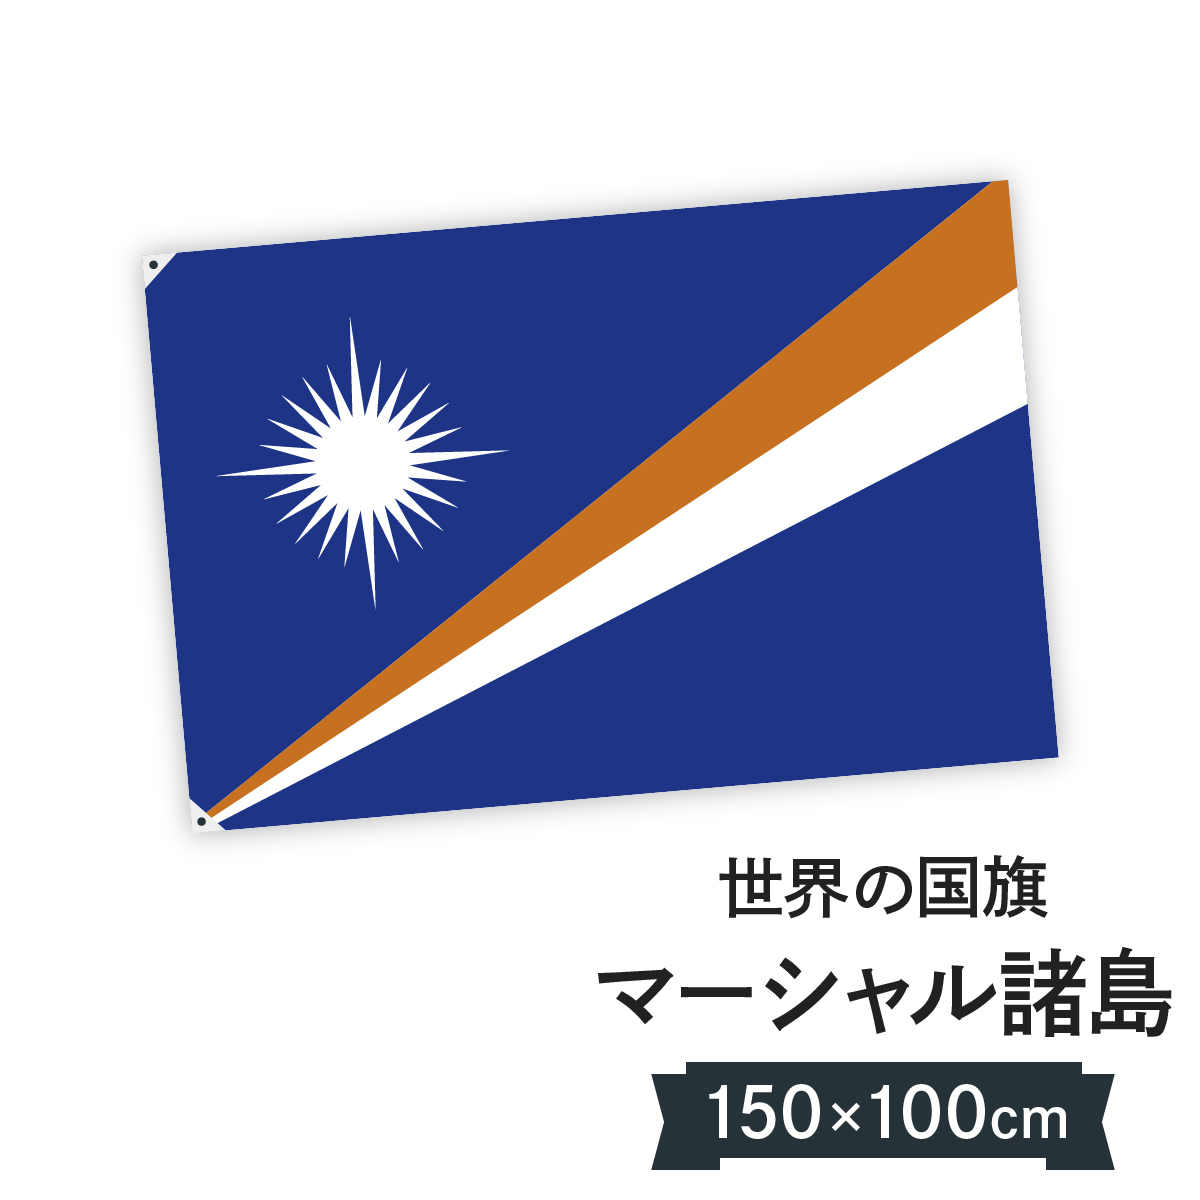 楽天市場 マーシャル諸島 国旗 W150cm H100cm グッズプロ